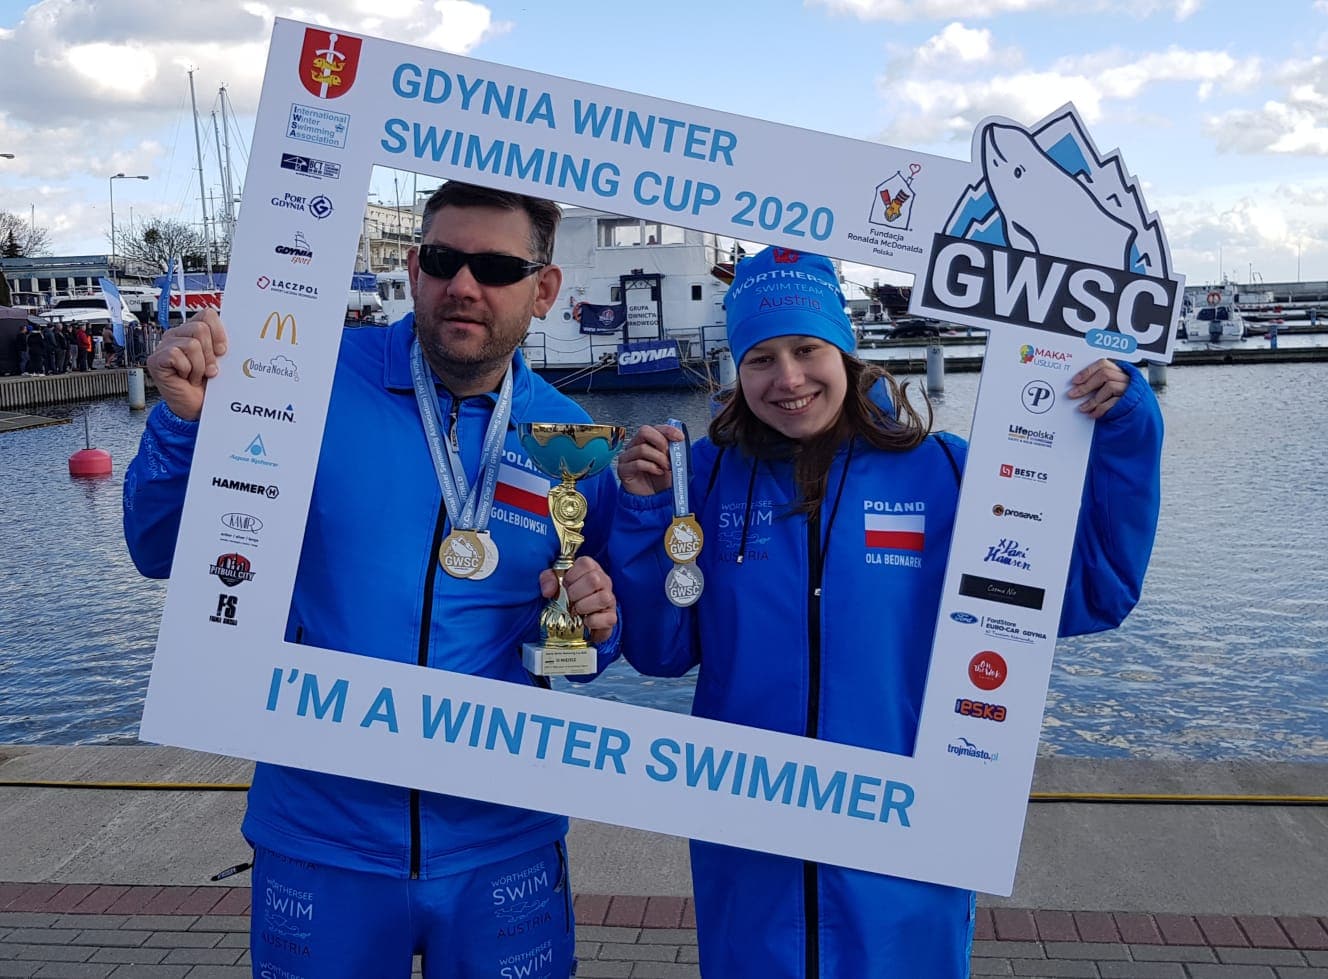 v.l.: Remigius Golebiowski und Ola Bednarek konnten in Polen insgesamt fünf Gold- und drei Silbermedaillen für das Wörthersee-Swim Team gewinnen.